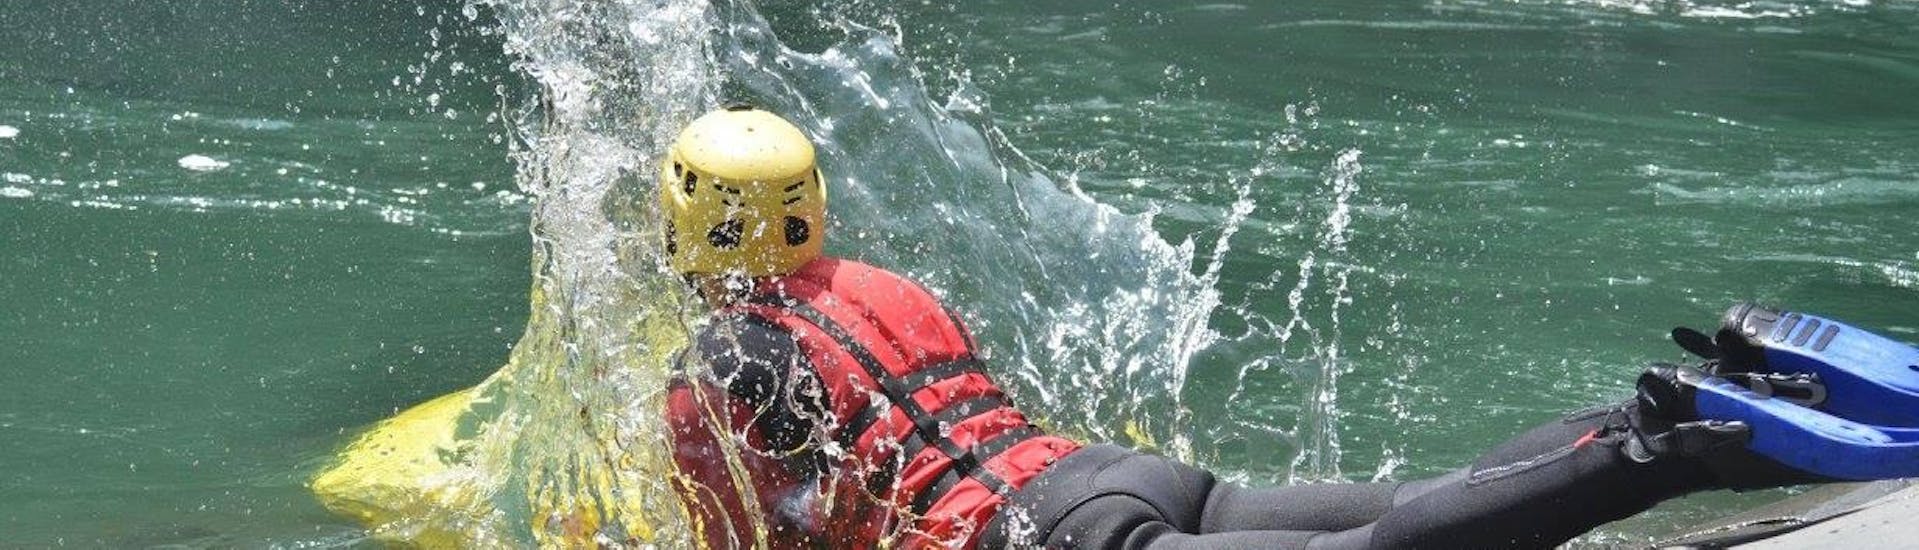 Un ragazzo entra in acqua e si appresta a iniziare l'Hydrospeed sul fiume Sesia - Gorge Tour con Eddyline - The River Experience Valsesia.